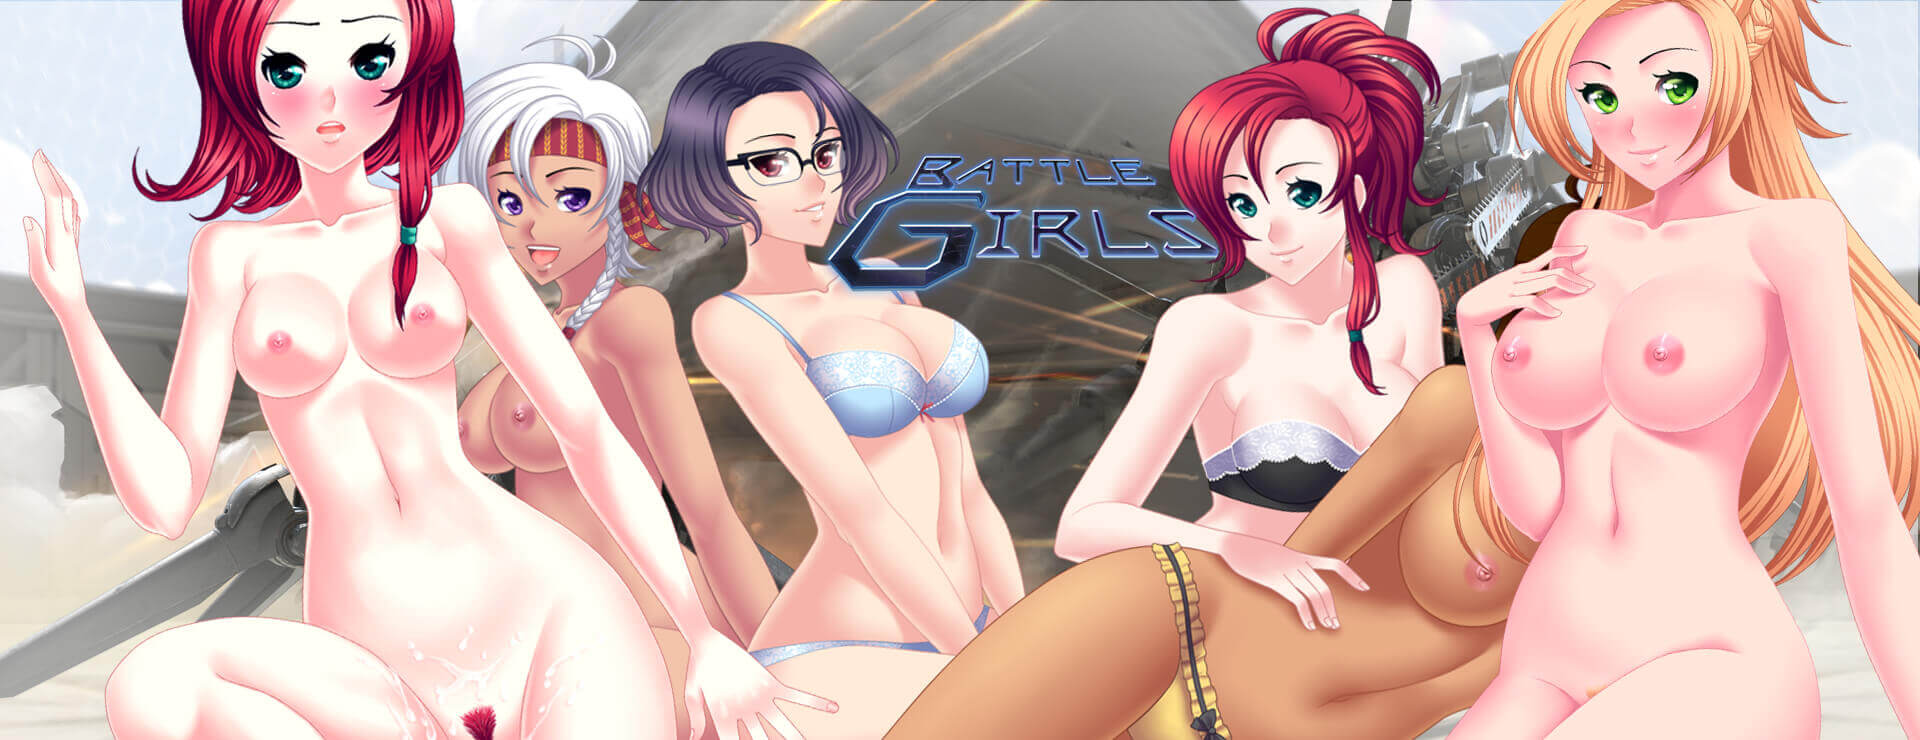 Battle Girls - Novela Visual Juego